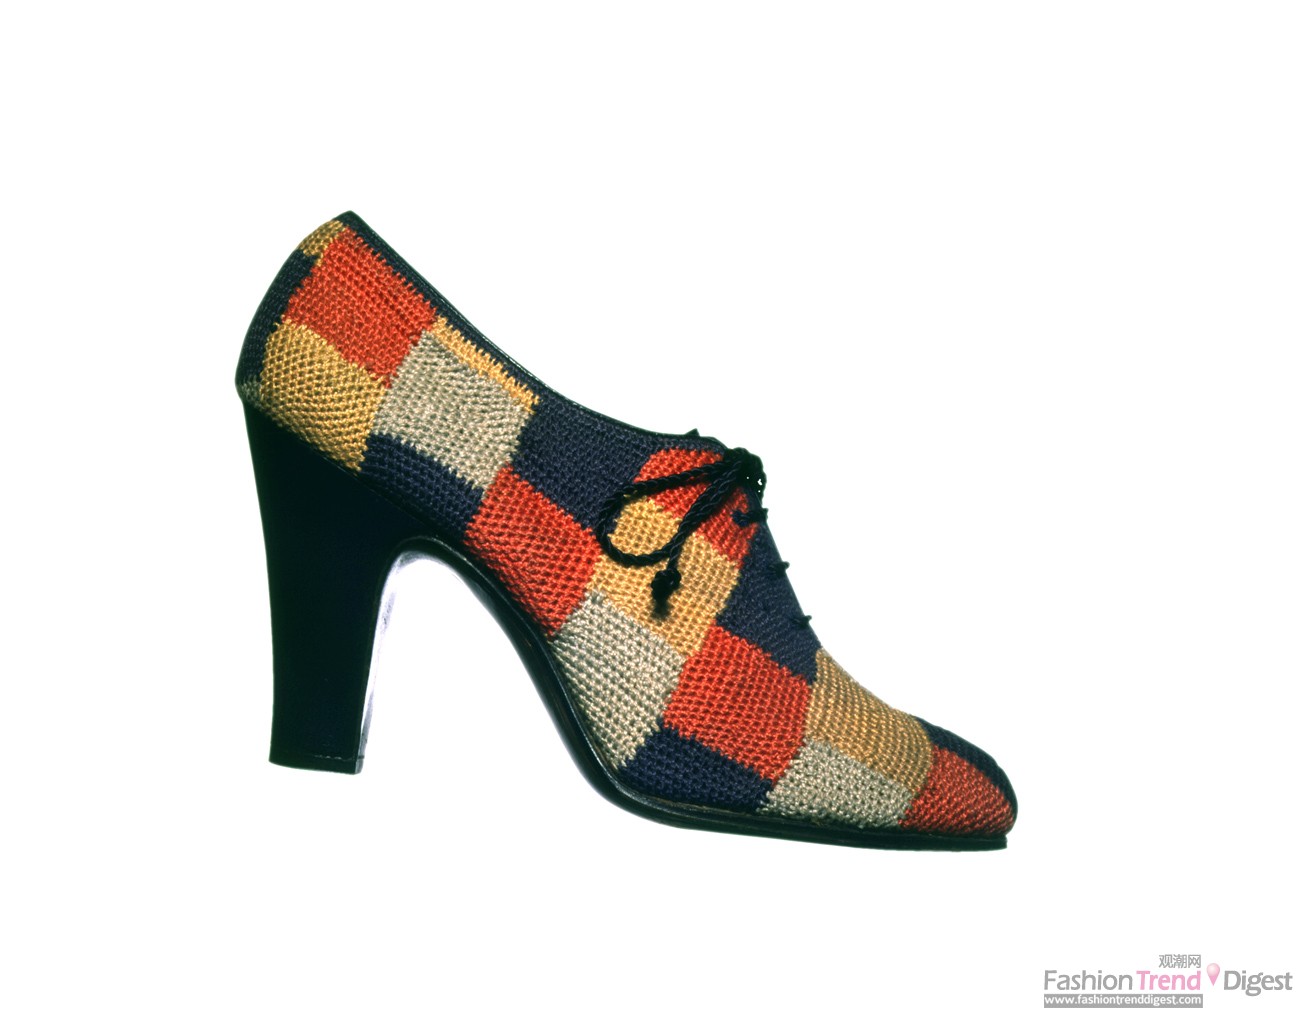 15 Salvatore Ferragamo，蕾丝鞋， 1935-1938年。鞋面为缝制而成的各色布片，带有方格绣纹。鞋跟由蓝色小羊皮包裹。佛罗伦萨，Salvatore Ferragamo博物馆。 